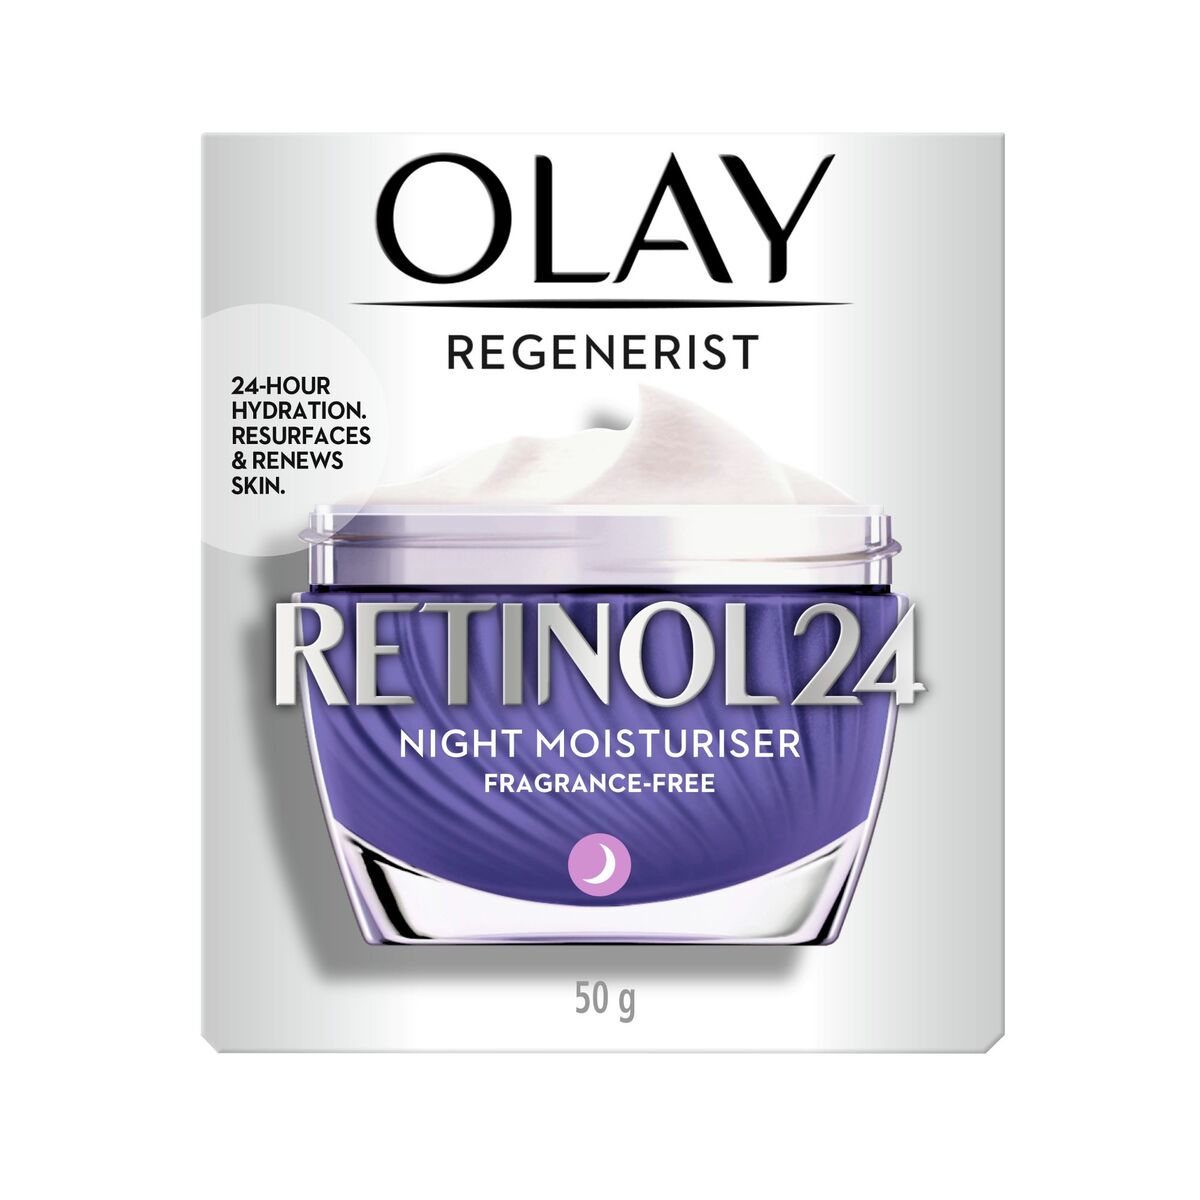 اشتري قم بشراء Olay Regenerist Retinol 24 Night Moisturizer 50 g Online at Best Price من الموقع - من لولو هايبر ماركت Moistur.Cream/Fluid في الكويت